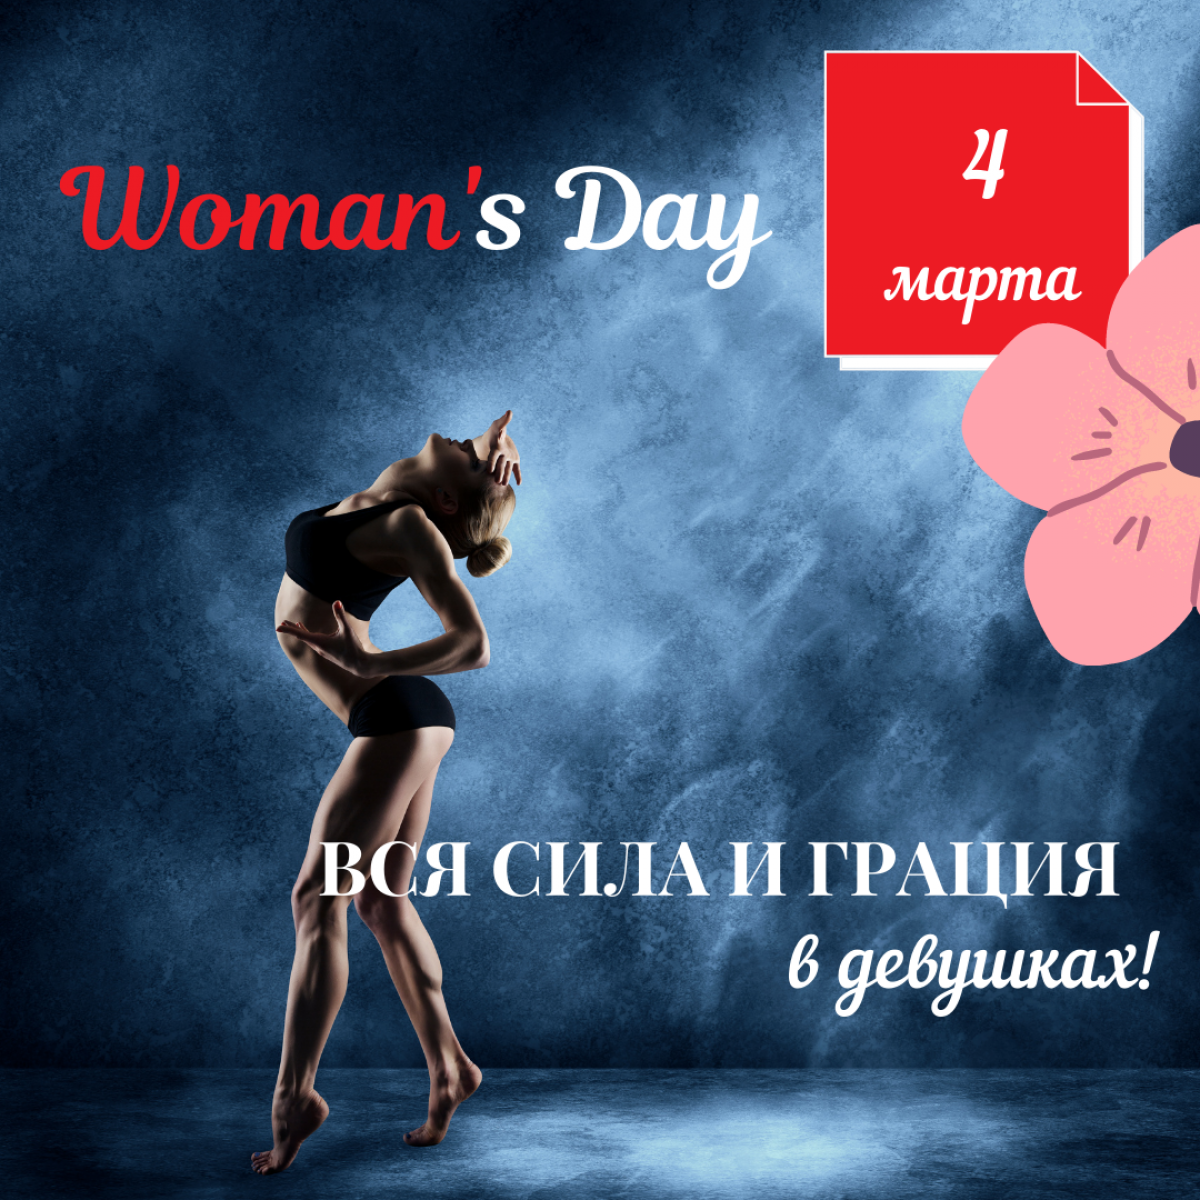 Woman's Day В Fitness24 Народная!